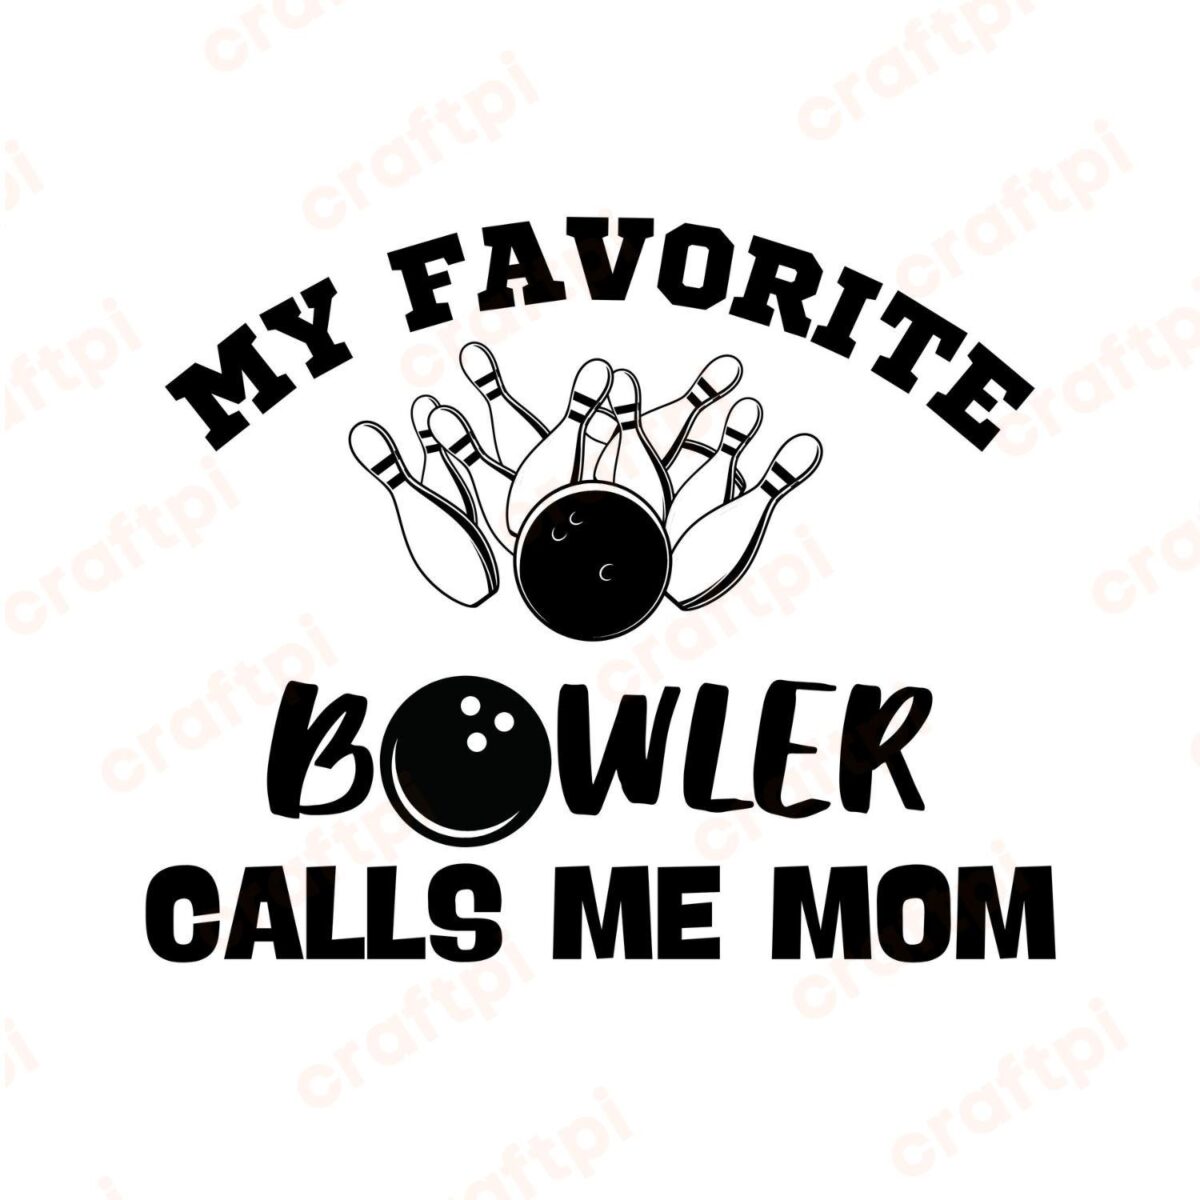 My Favorite Bowler Calls Me Mom SVG, PNG, JPG, PDF Files